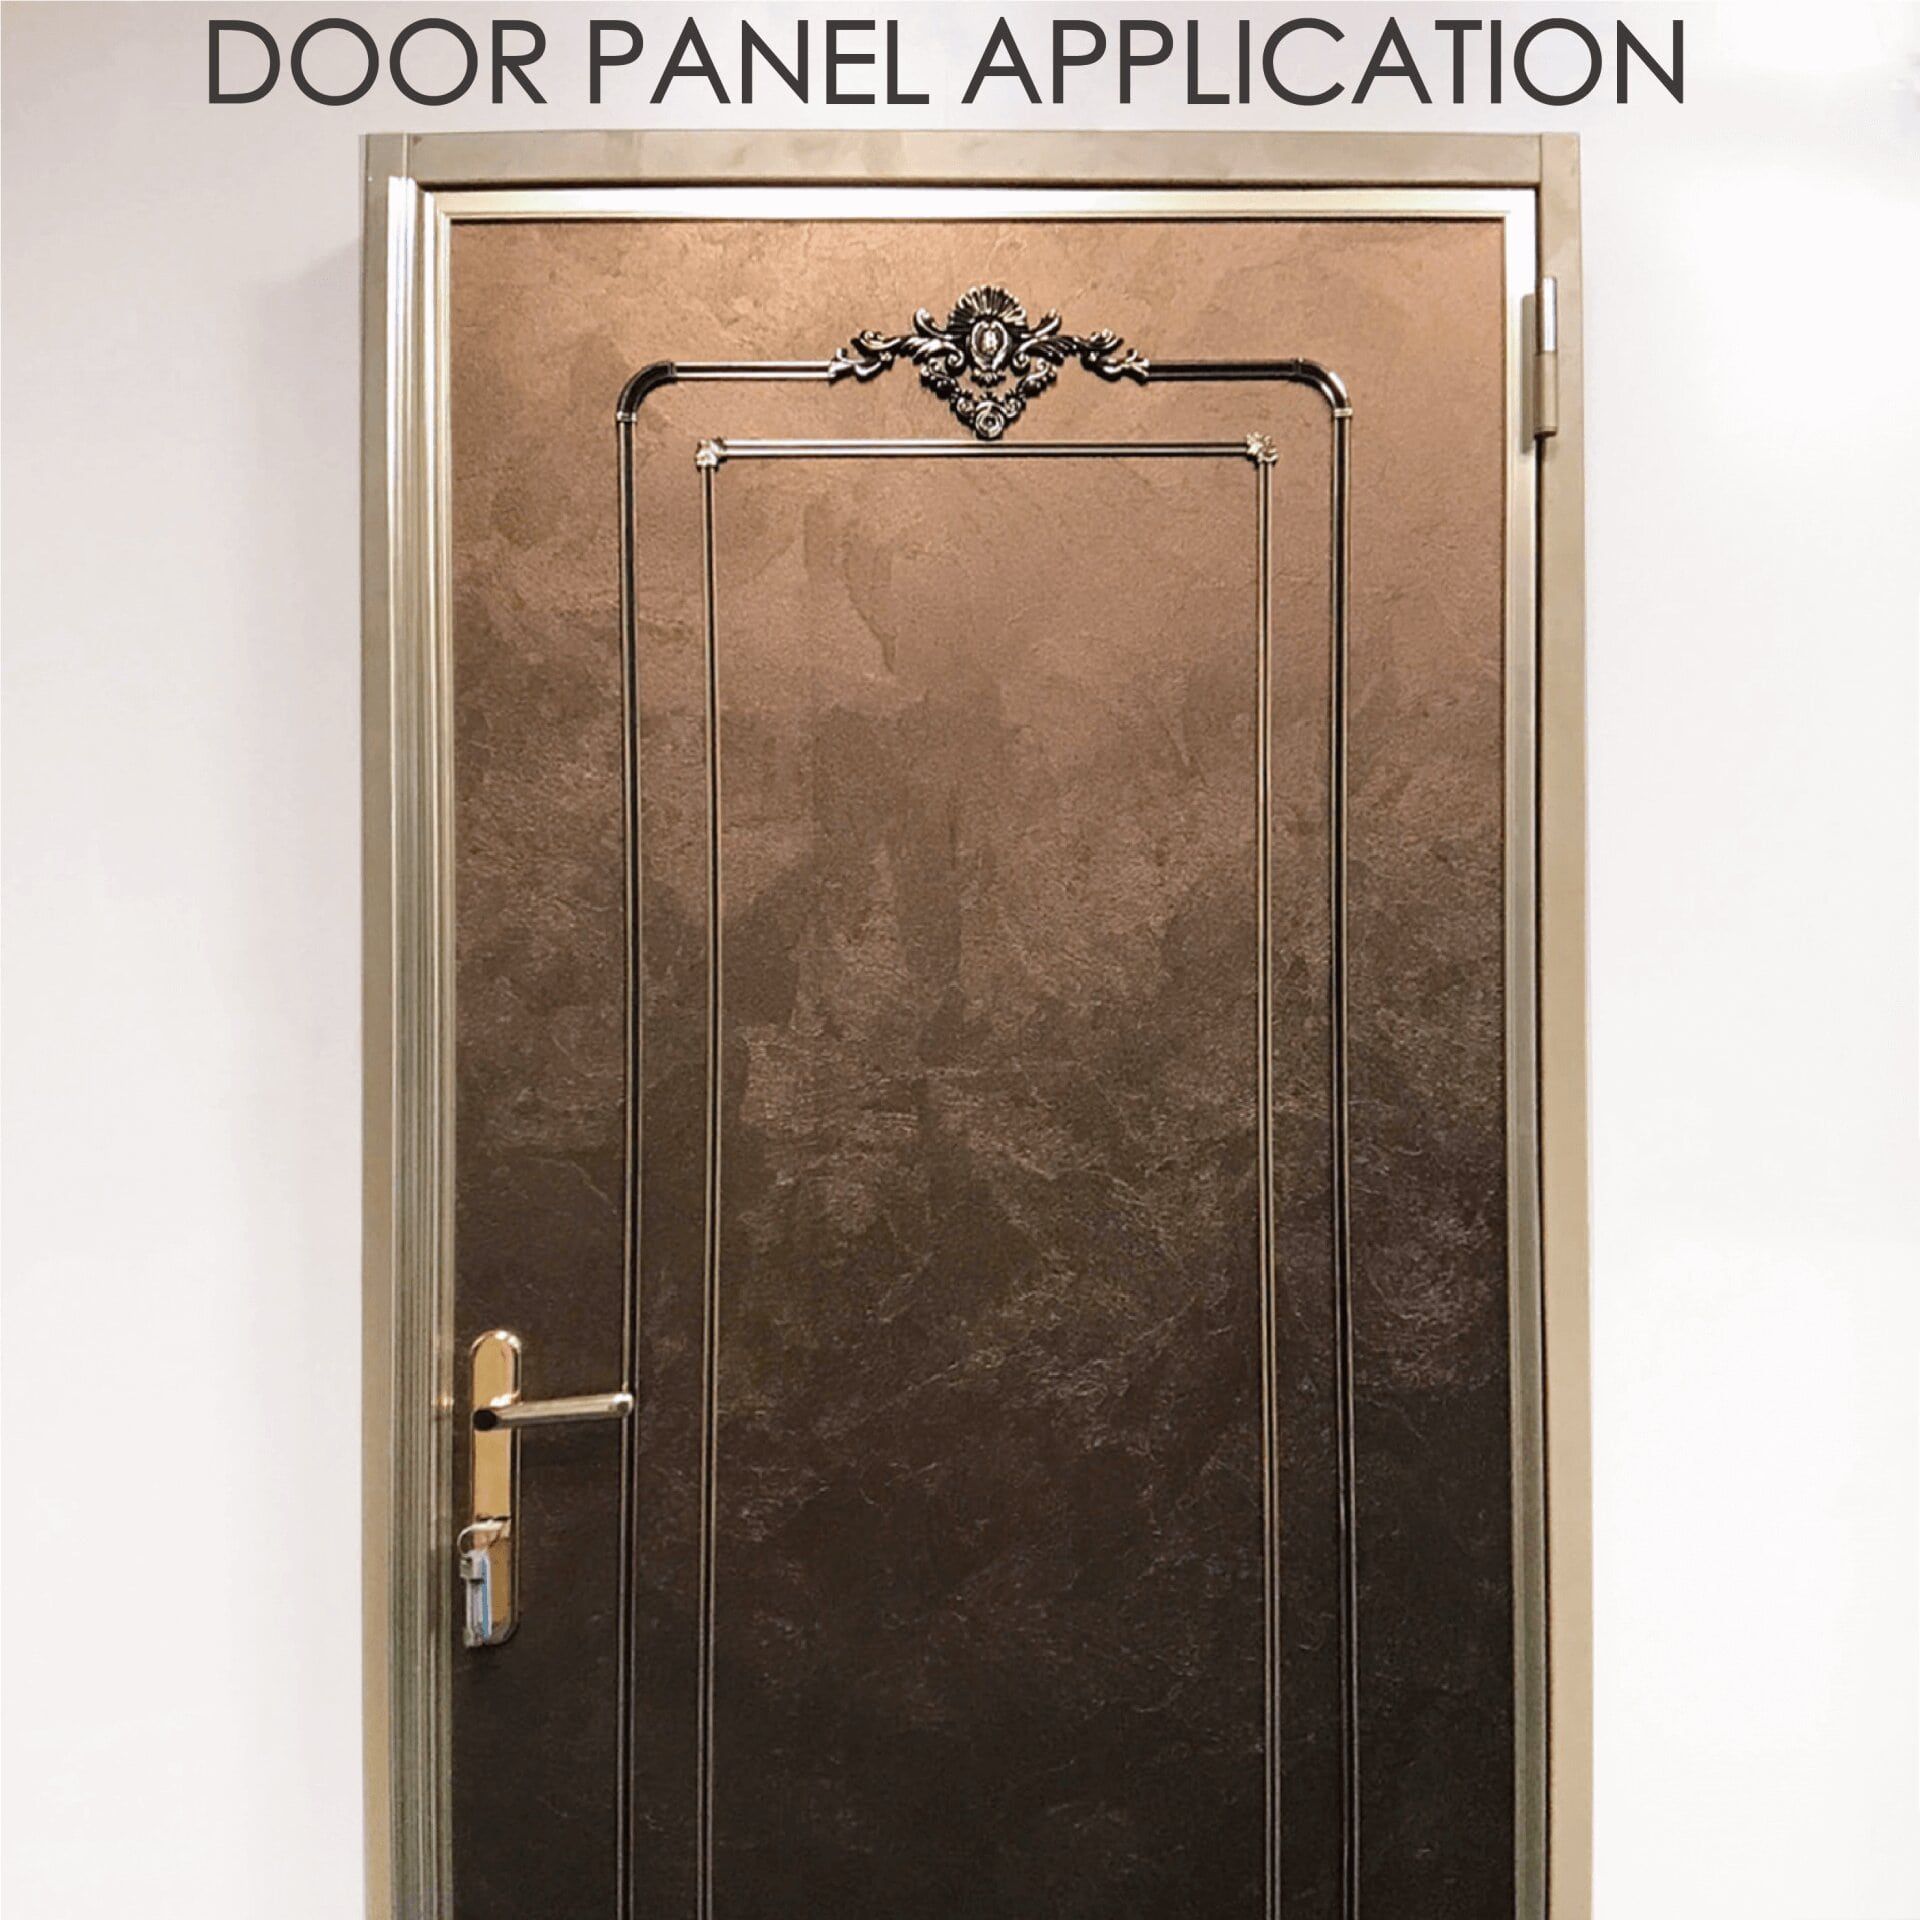 Das Ersetzen von Holztüren durch laminiertes Metall kann die Sicherheit und Haltbarkeit erhöhen.